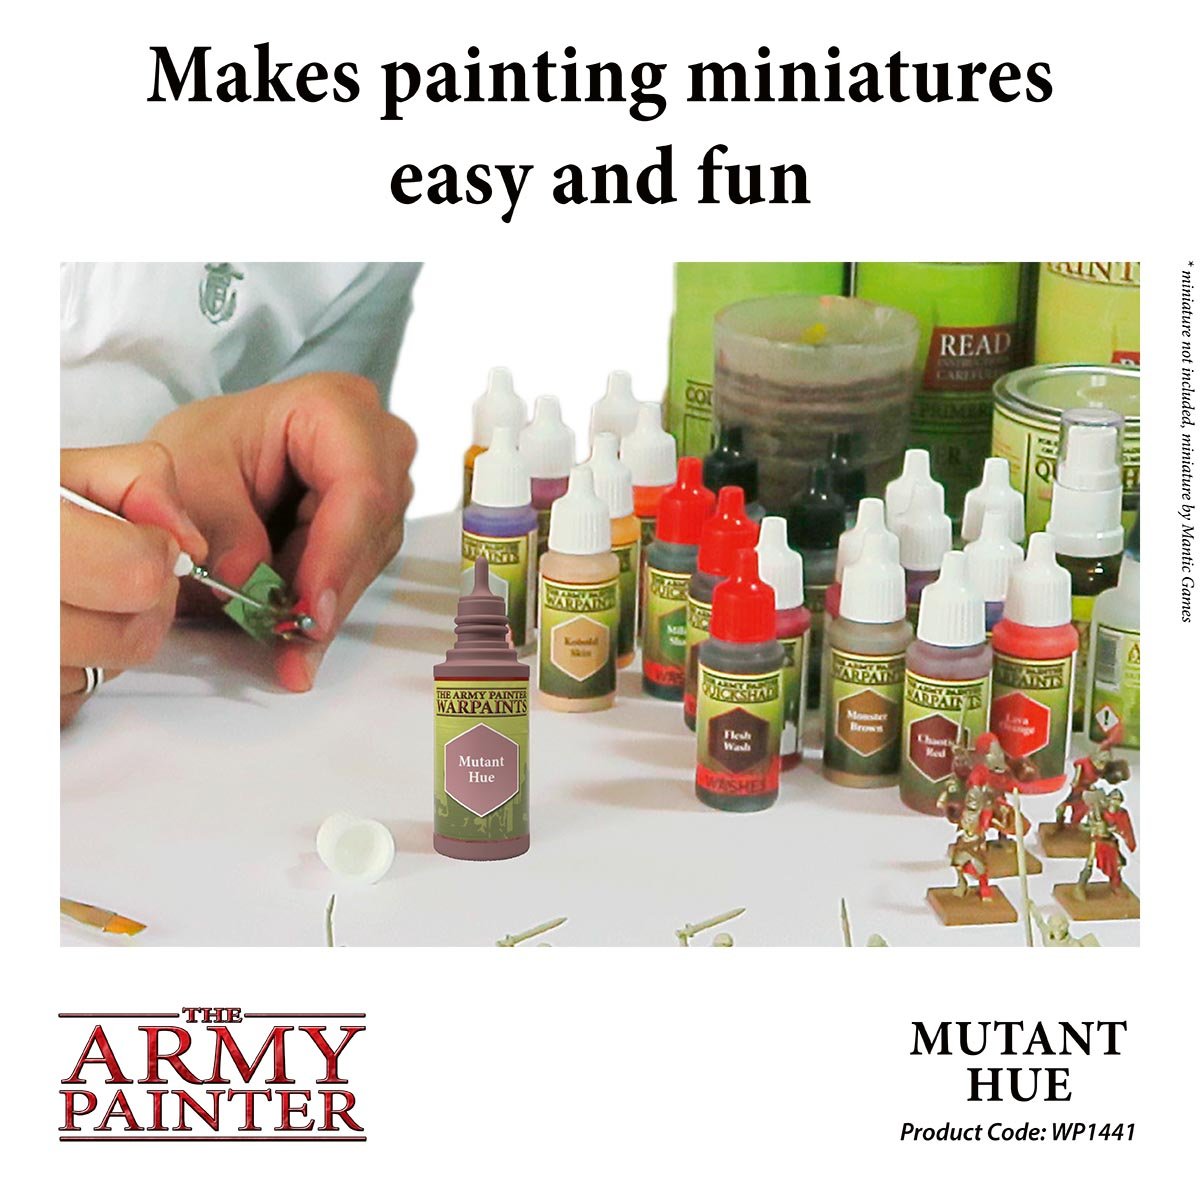 The Army Painter Warpaints WP1441 Mutant Hue Acrylic Paint 18ml bottle